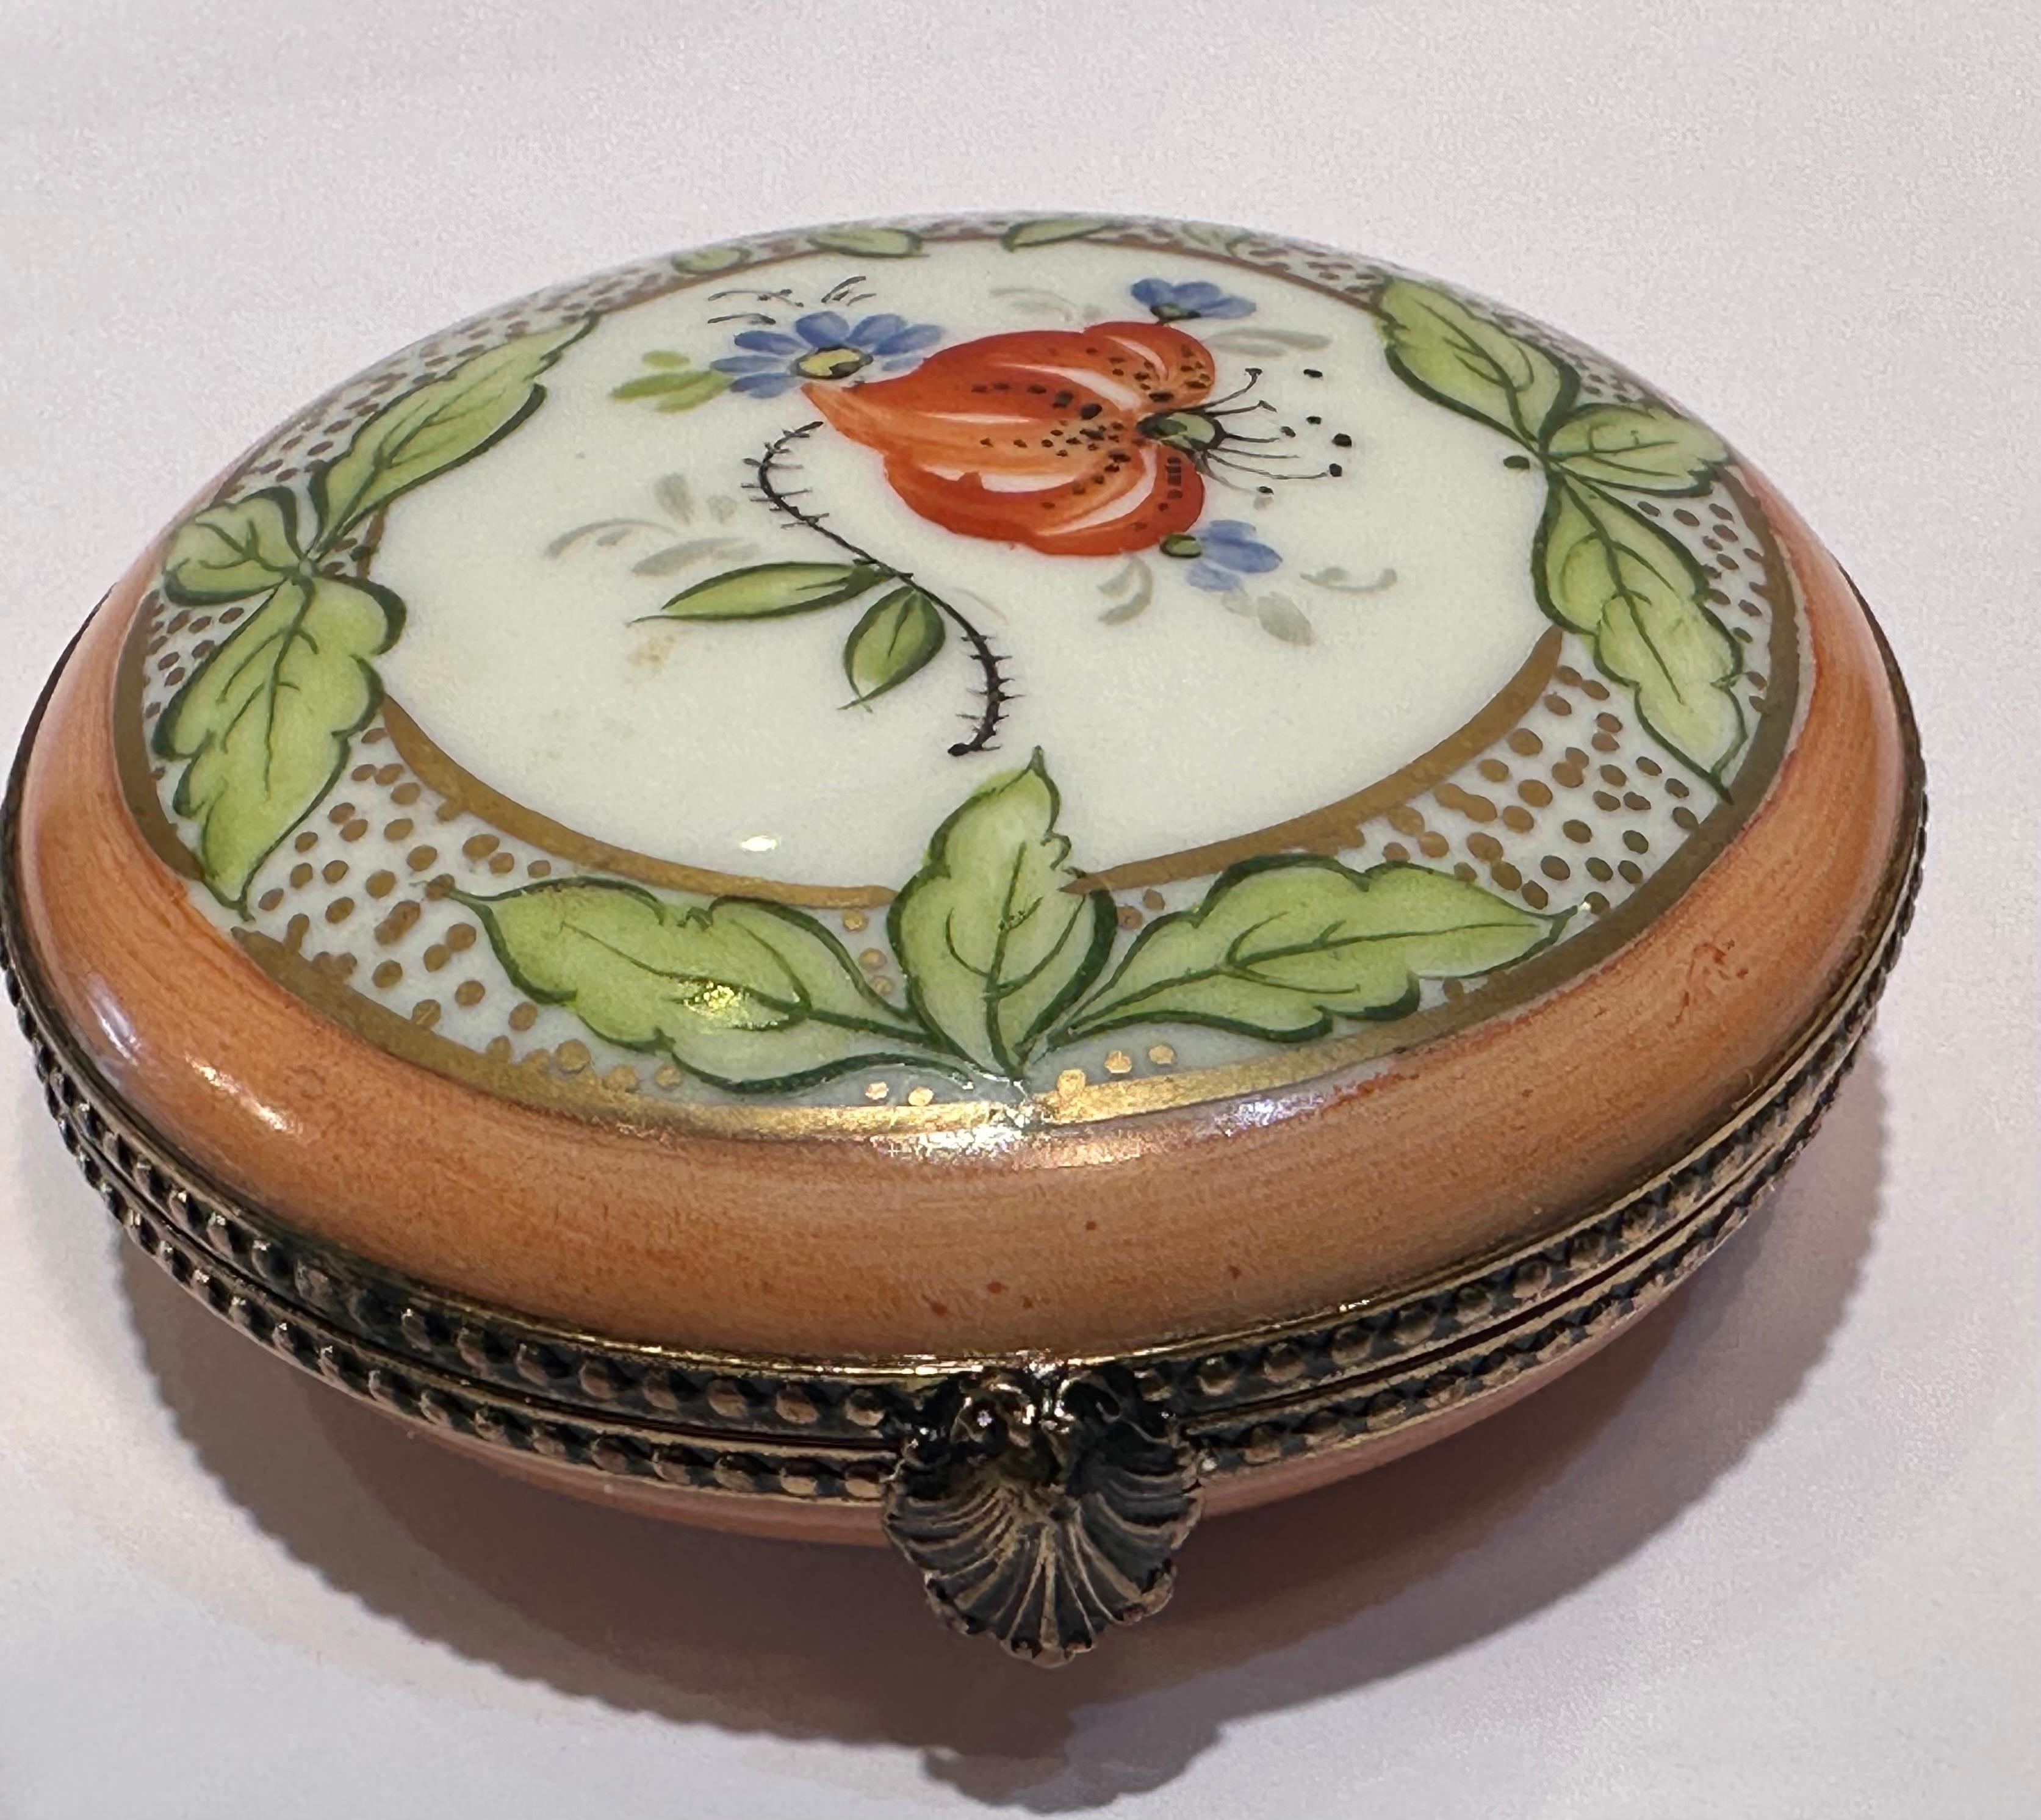 Die schöne kreisförmige Schmuckdose aus Limoges-Porzellan ist handgefertigt mit einem pfirsichfarbenen und weißen Hintergrund. Sie ist mit einem Blumen- und Blattmotiv handbemalt und mit 24-karätigen Goldpunkten und -verzierungen verziert. Die